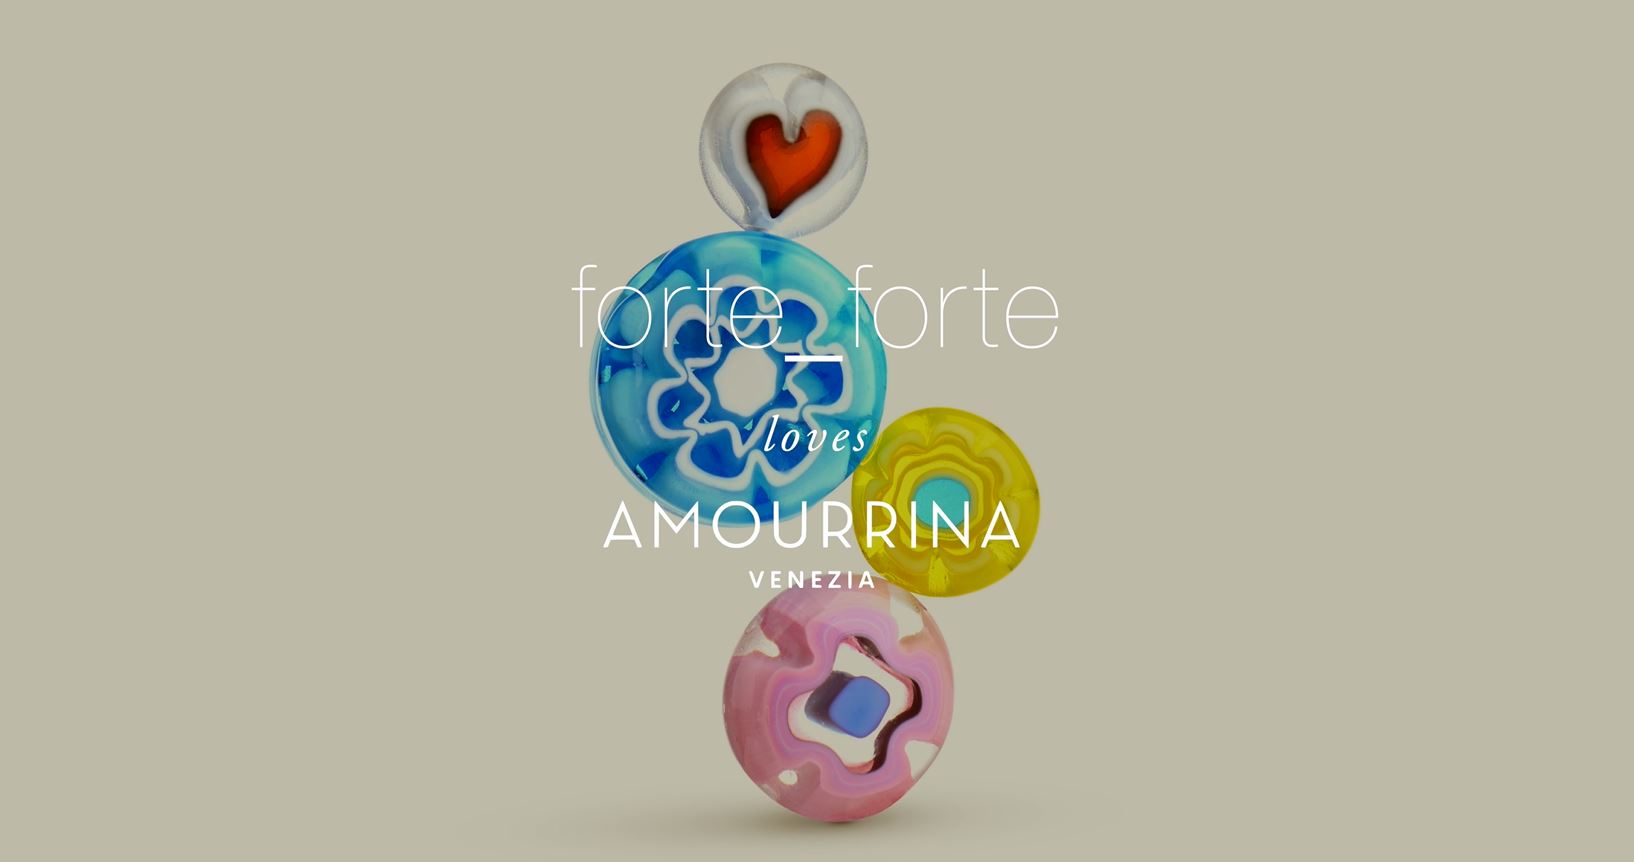 forte_forte loves amourrina: un viaje para descubrir una tradición milenaria